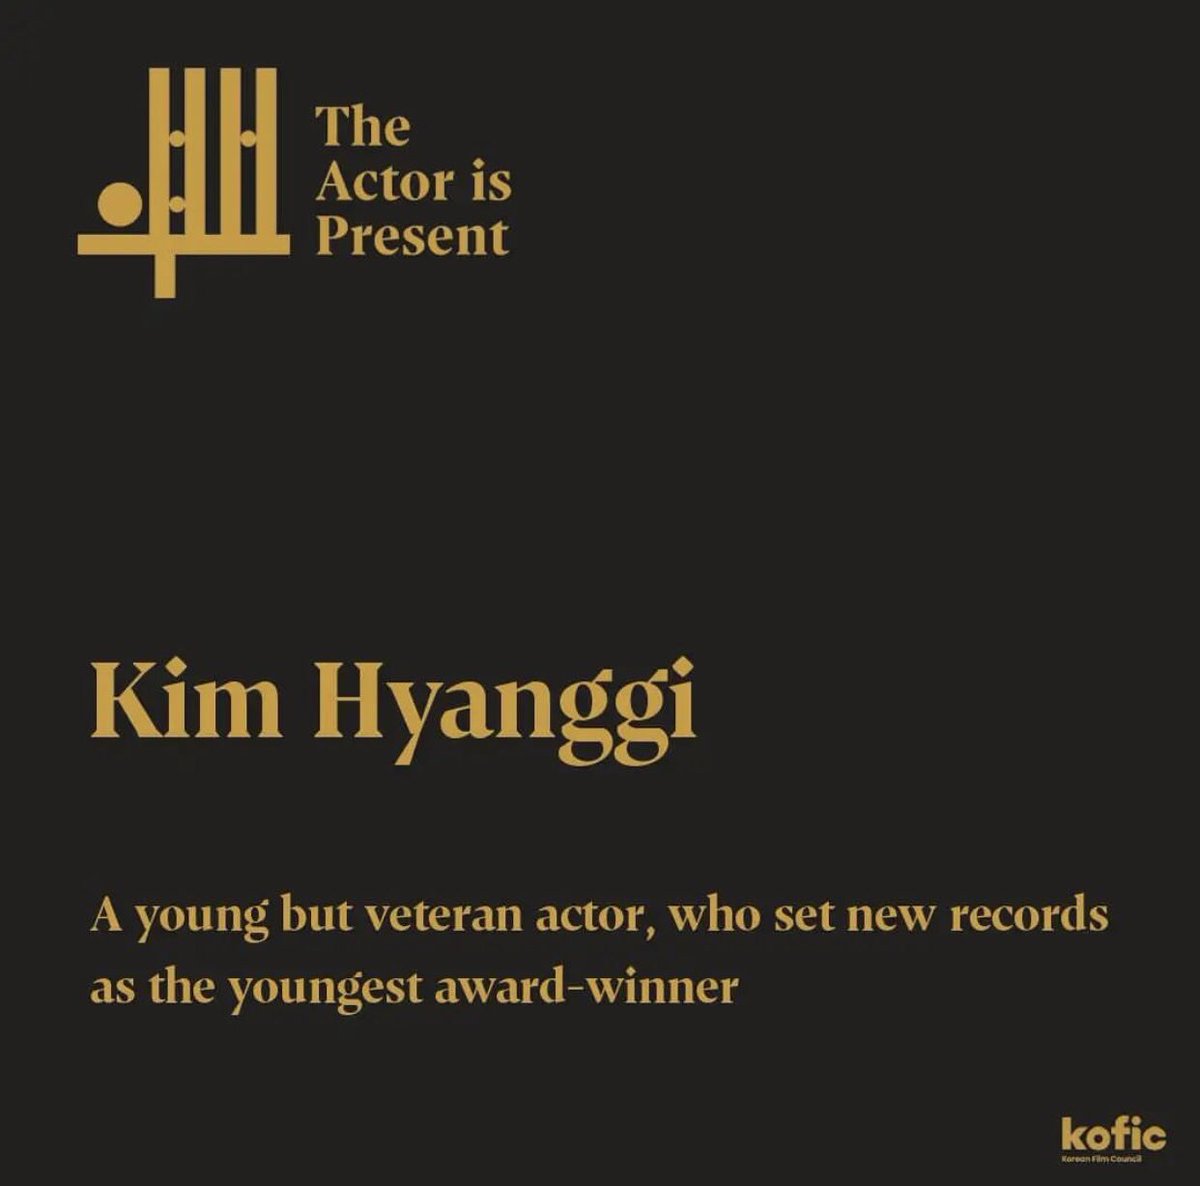 Kim hyang gi -aktor muda tapi veteran, yang mencetak rekor baru sebagai pemenang penghargaan termuda,Seorang veteran muda yang memecahkan semua rekor untuk aktingnya yang paling muda dengan daya tarik dan akting yang matang.
#김향기 #kimhyanggi #kofic #koreanactors200